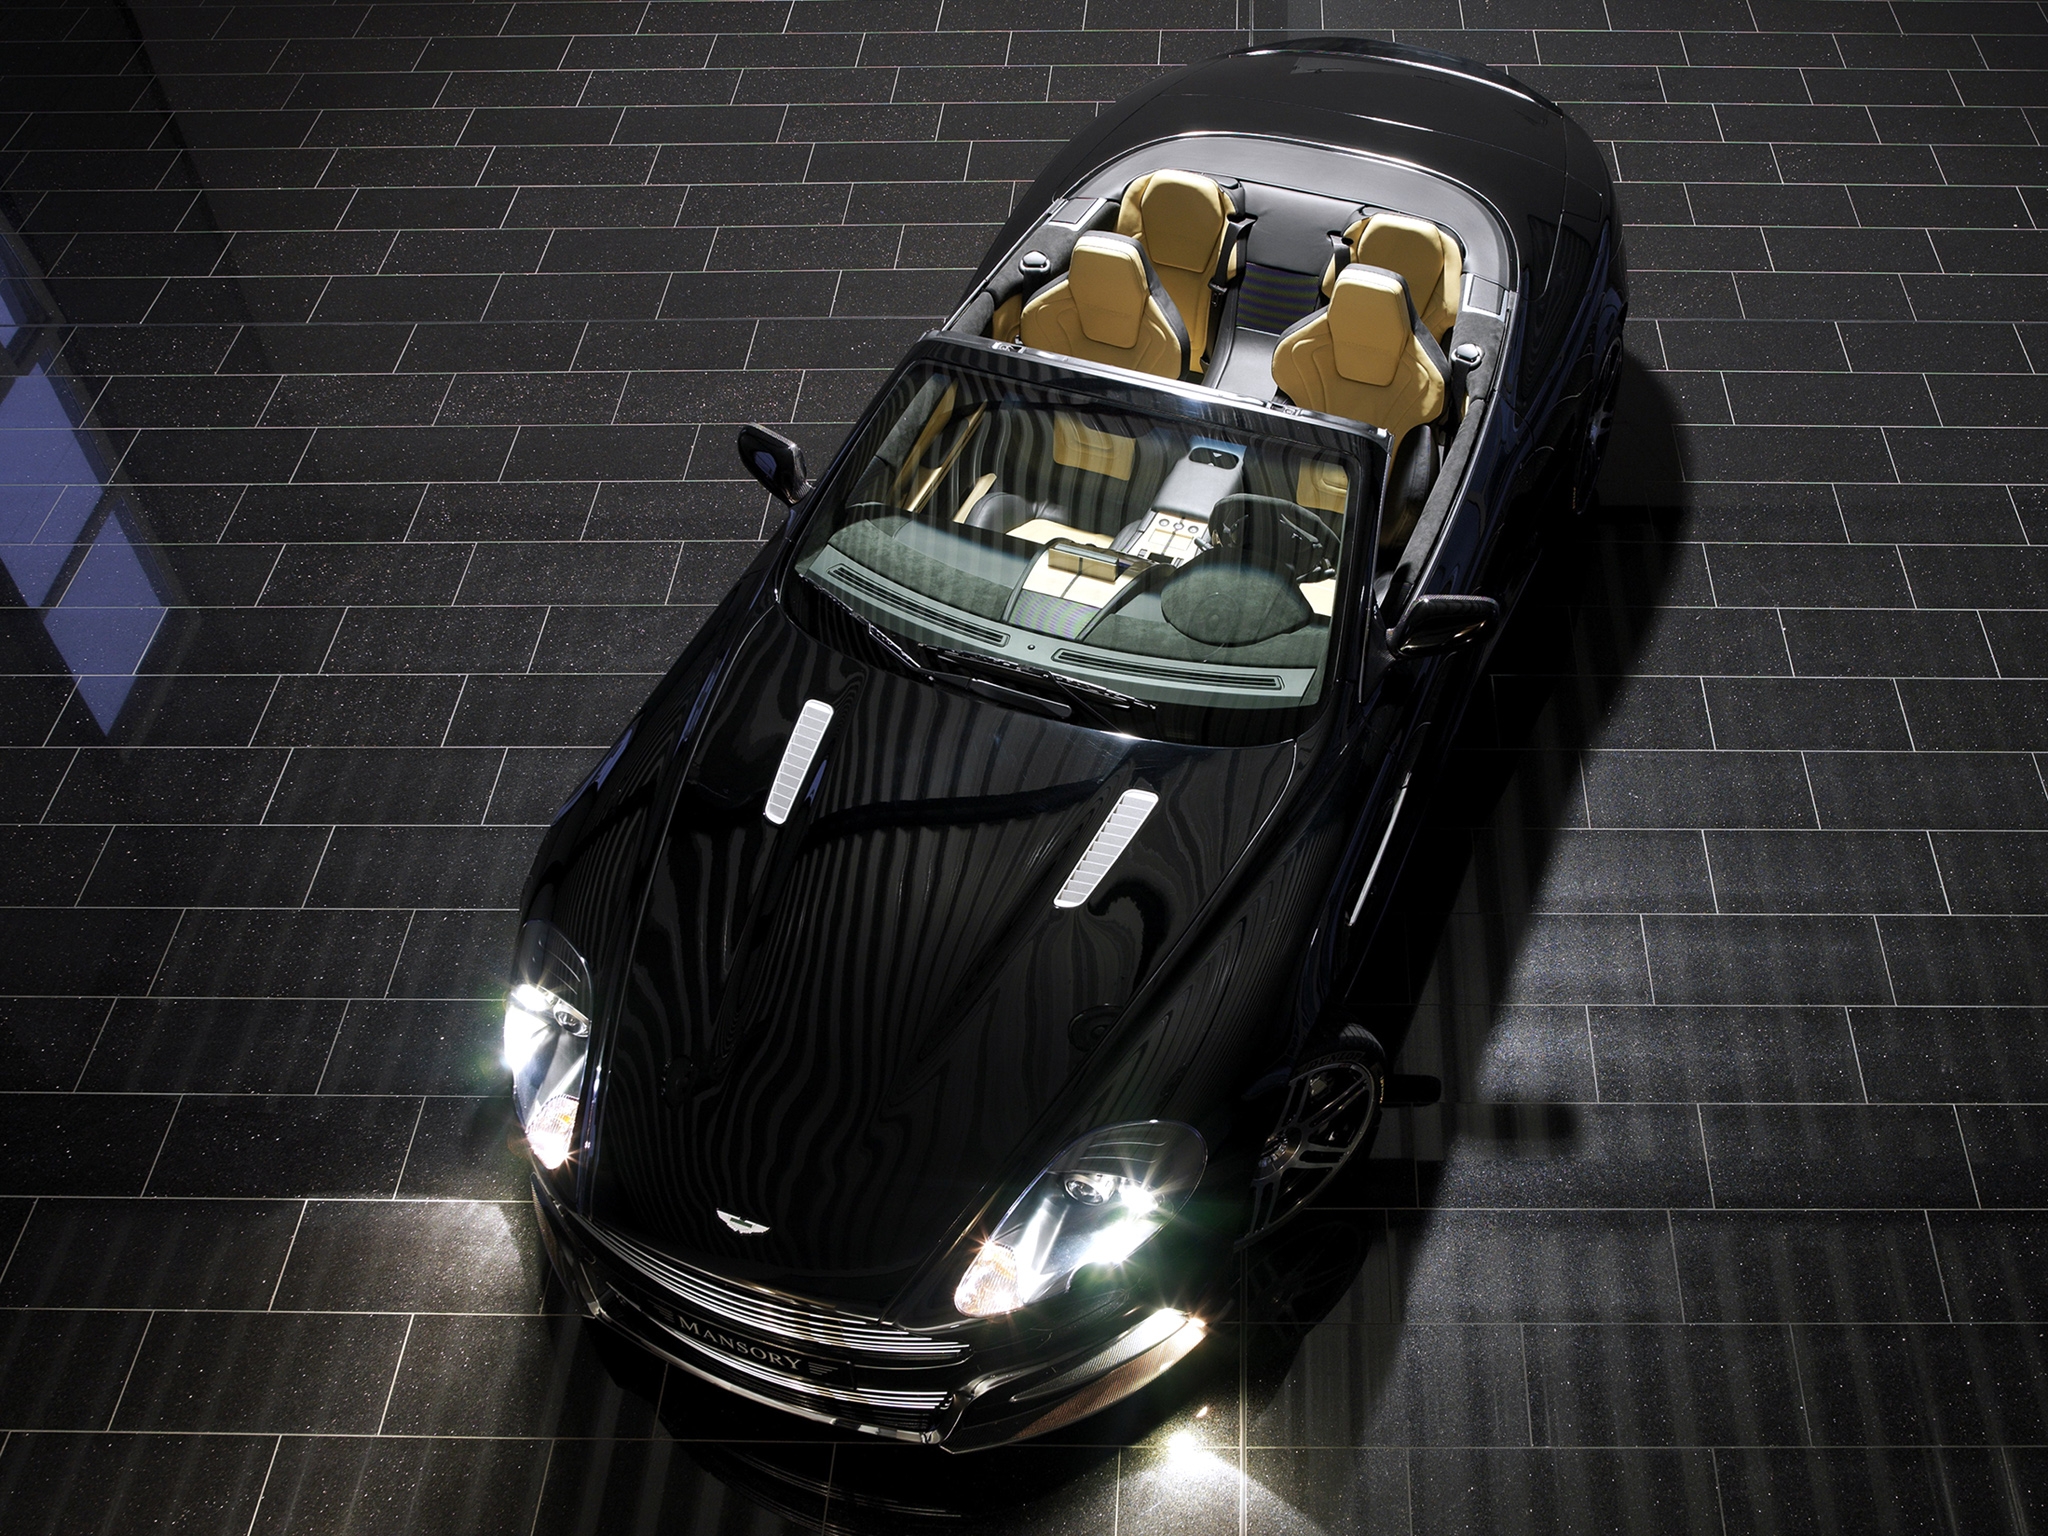 Aston Martin with the headlights on.